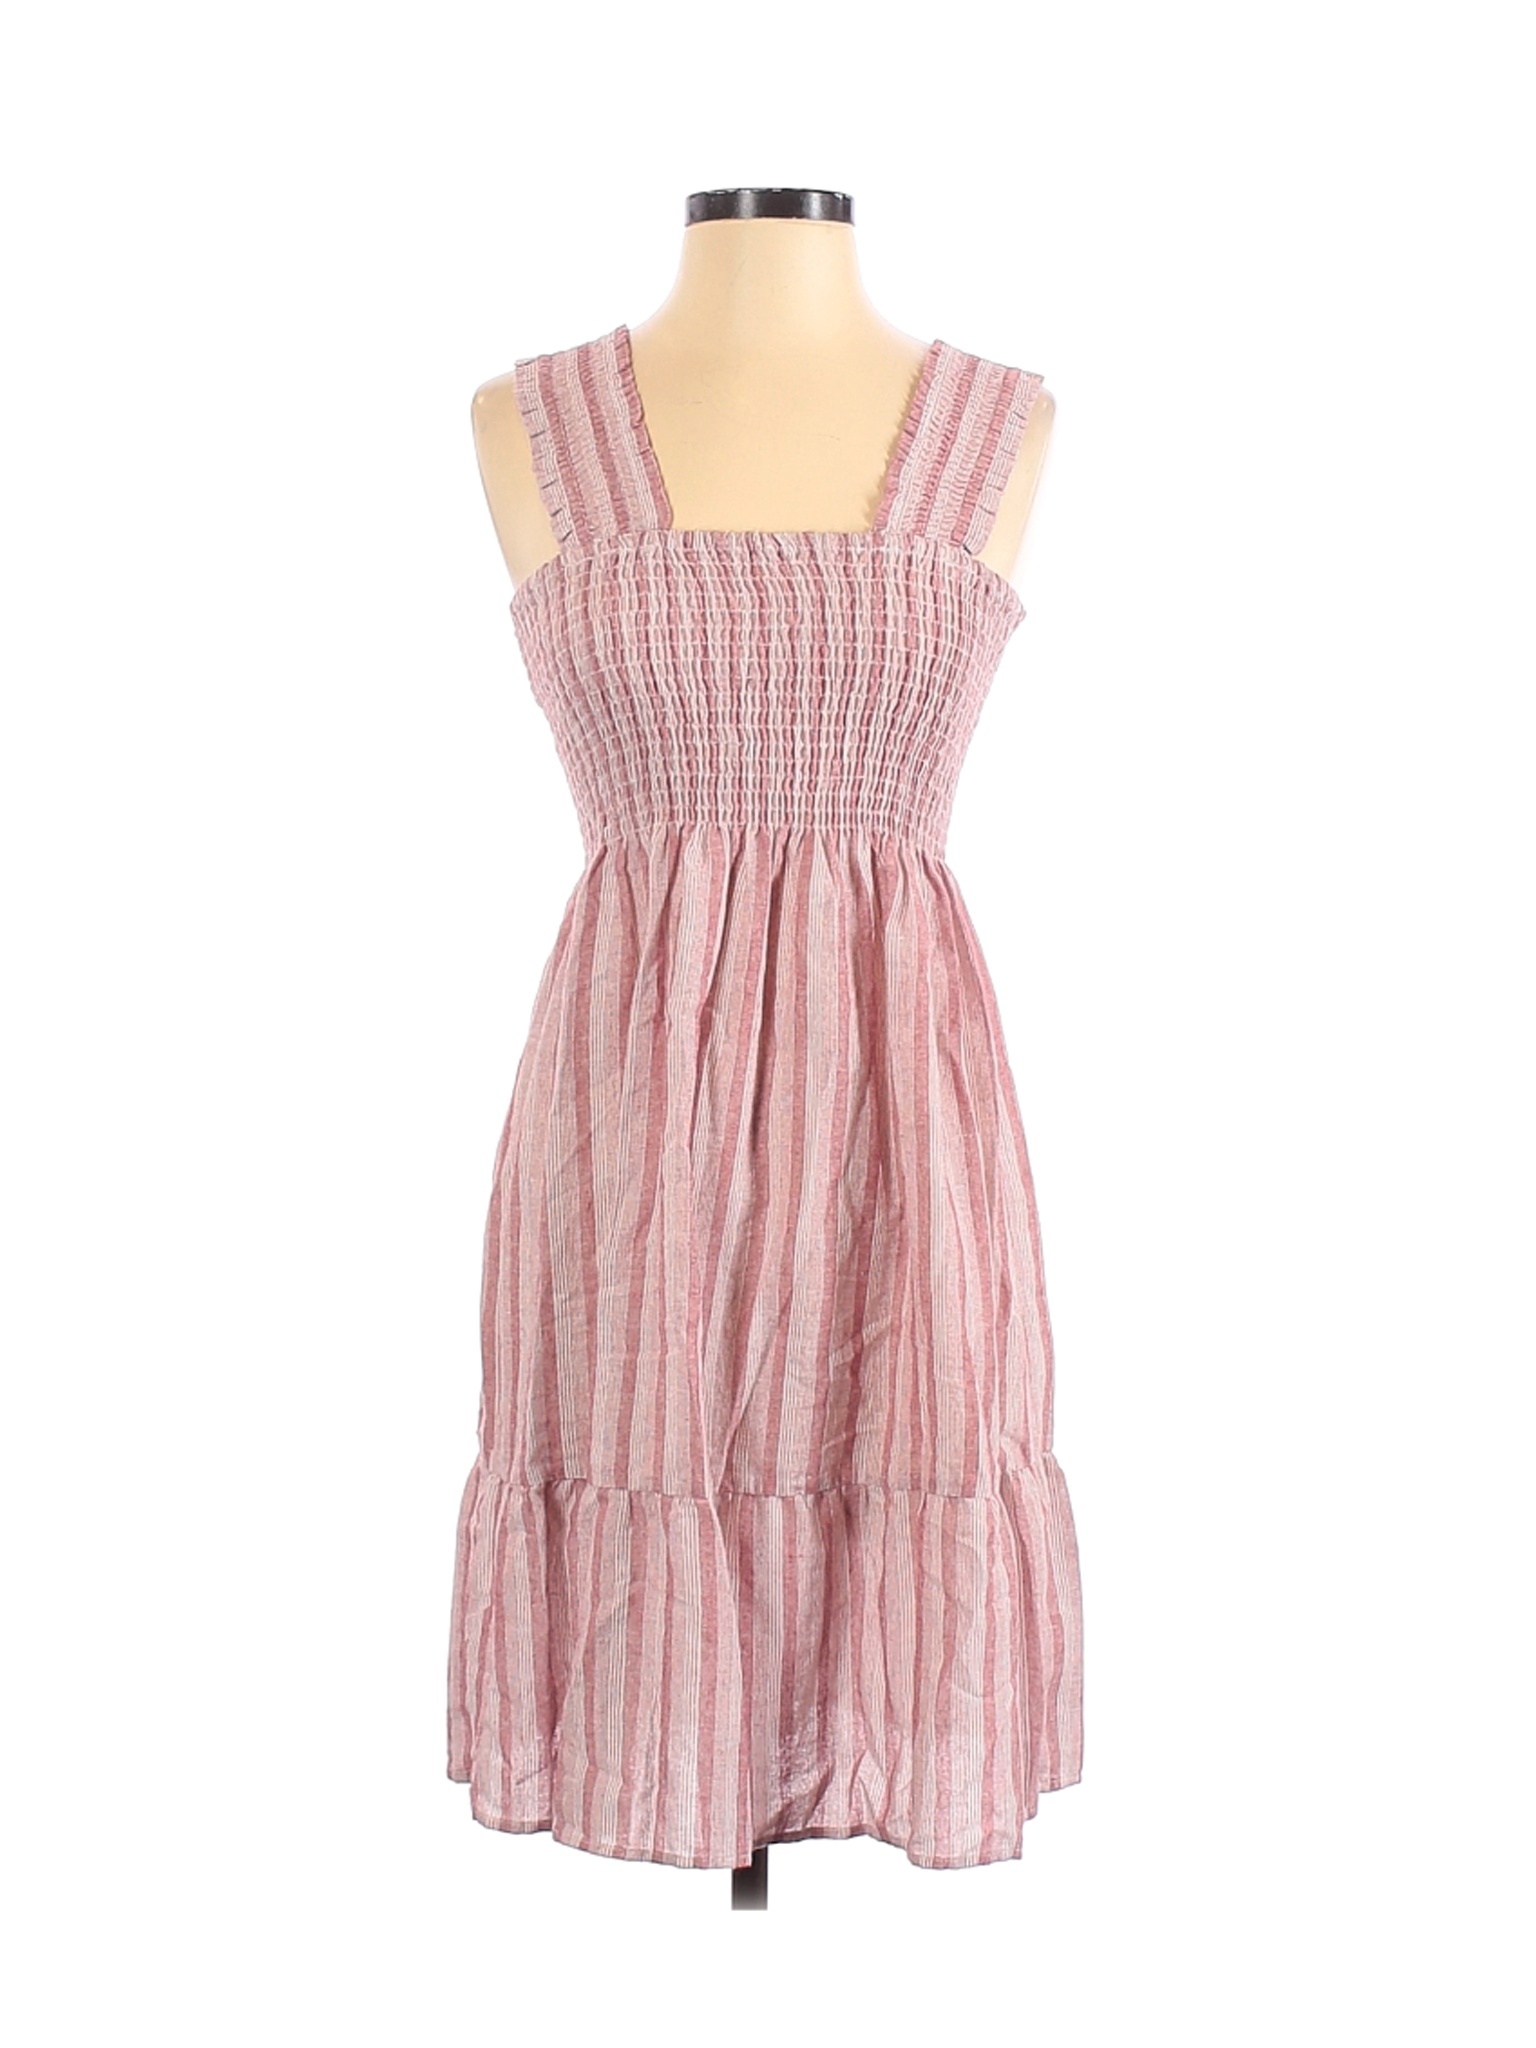 Easel Women Pink Casual Dress S | eBay